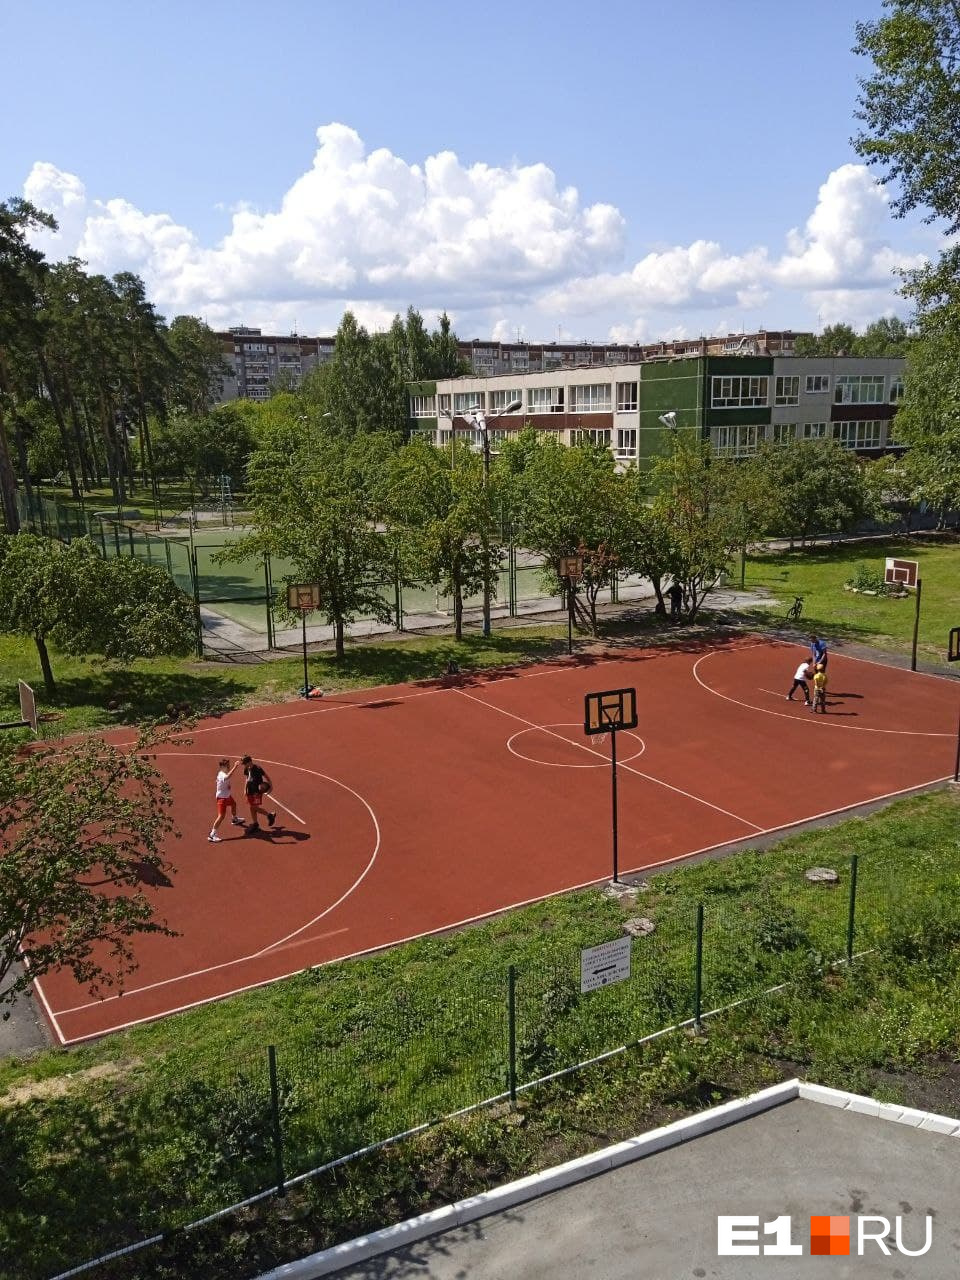 Так выглядит новый баскетбольный корт на территории соседней школы